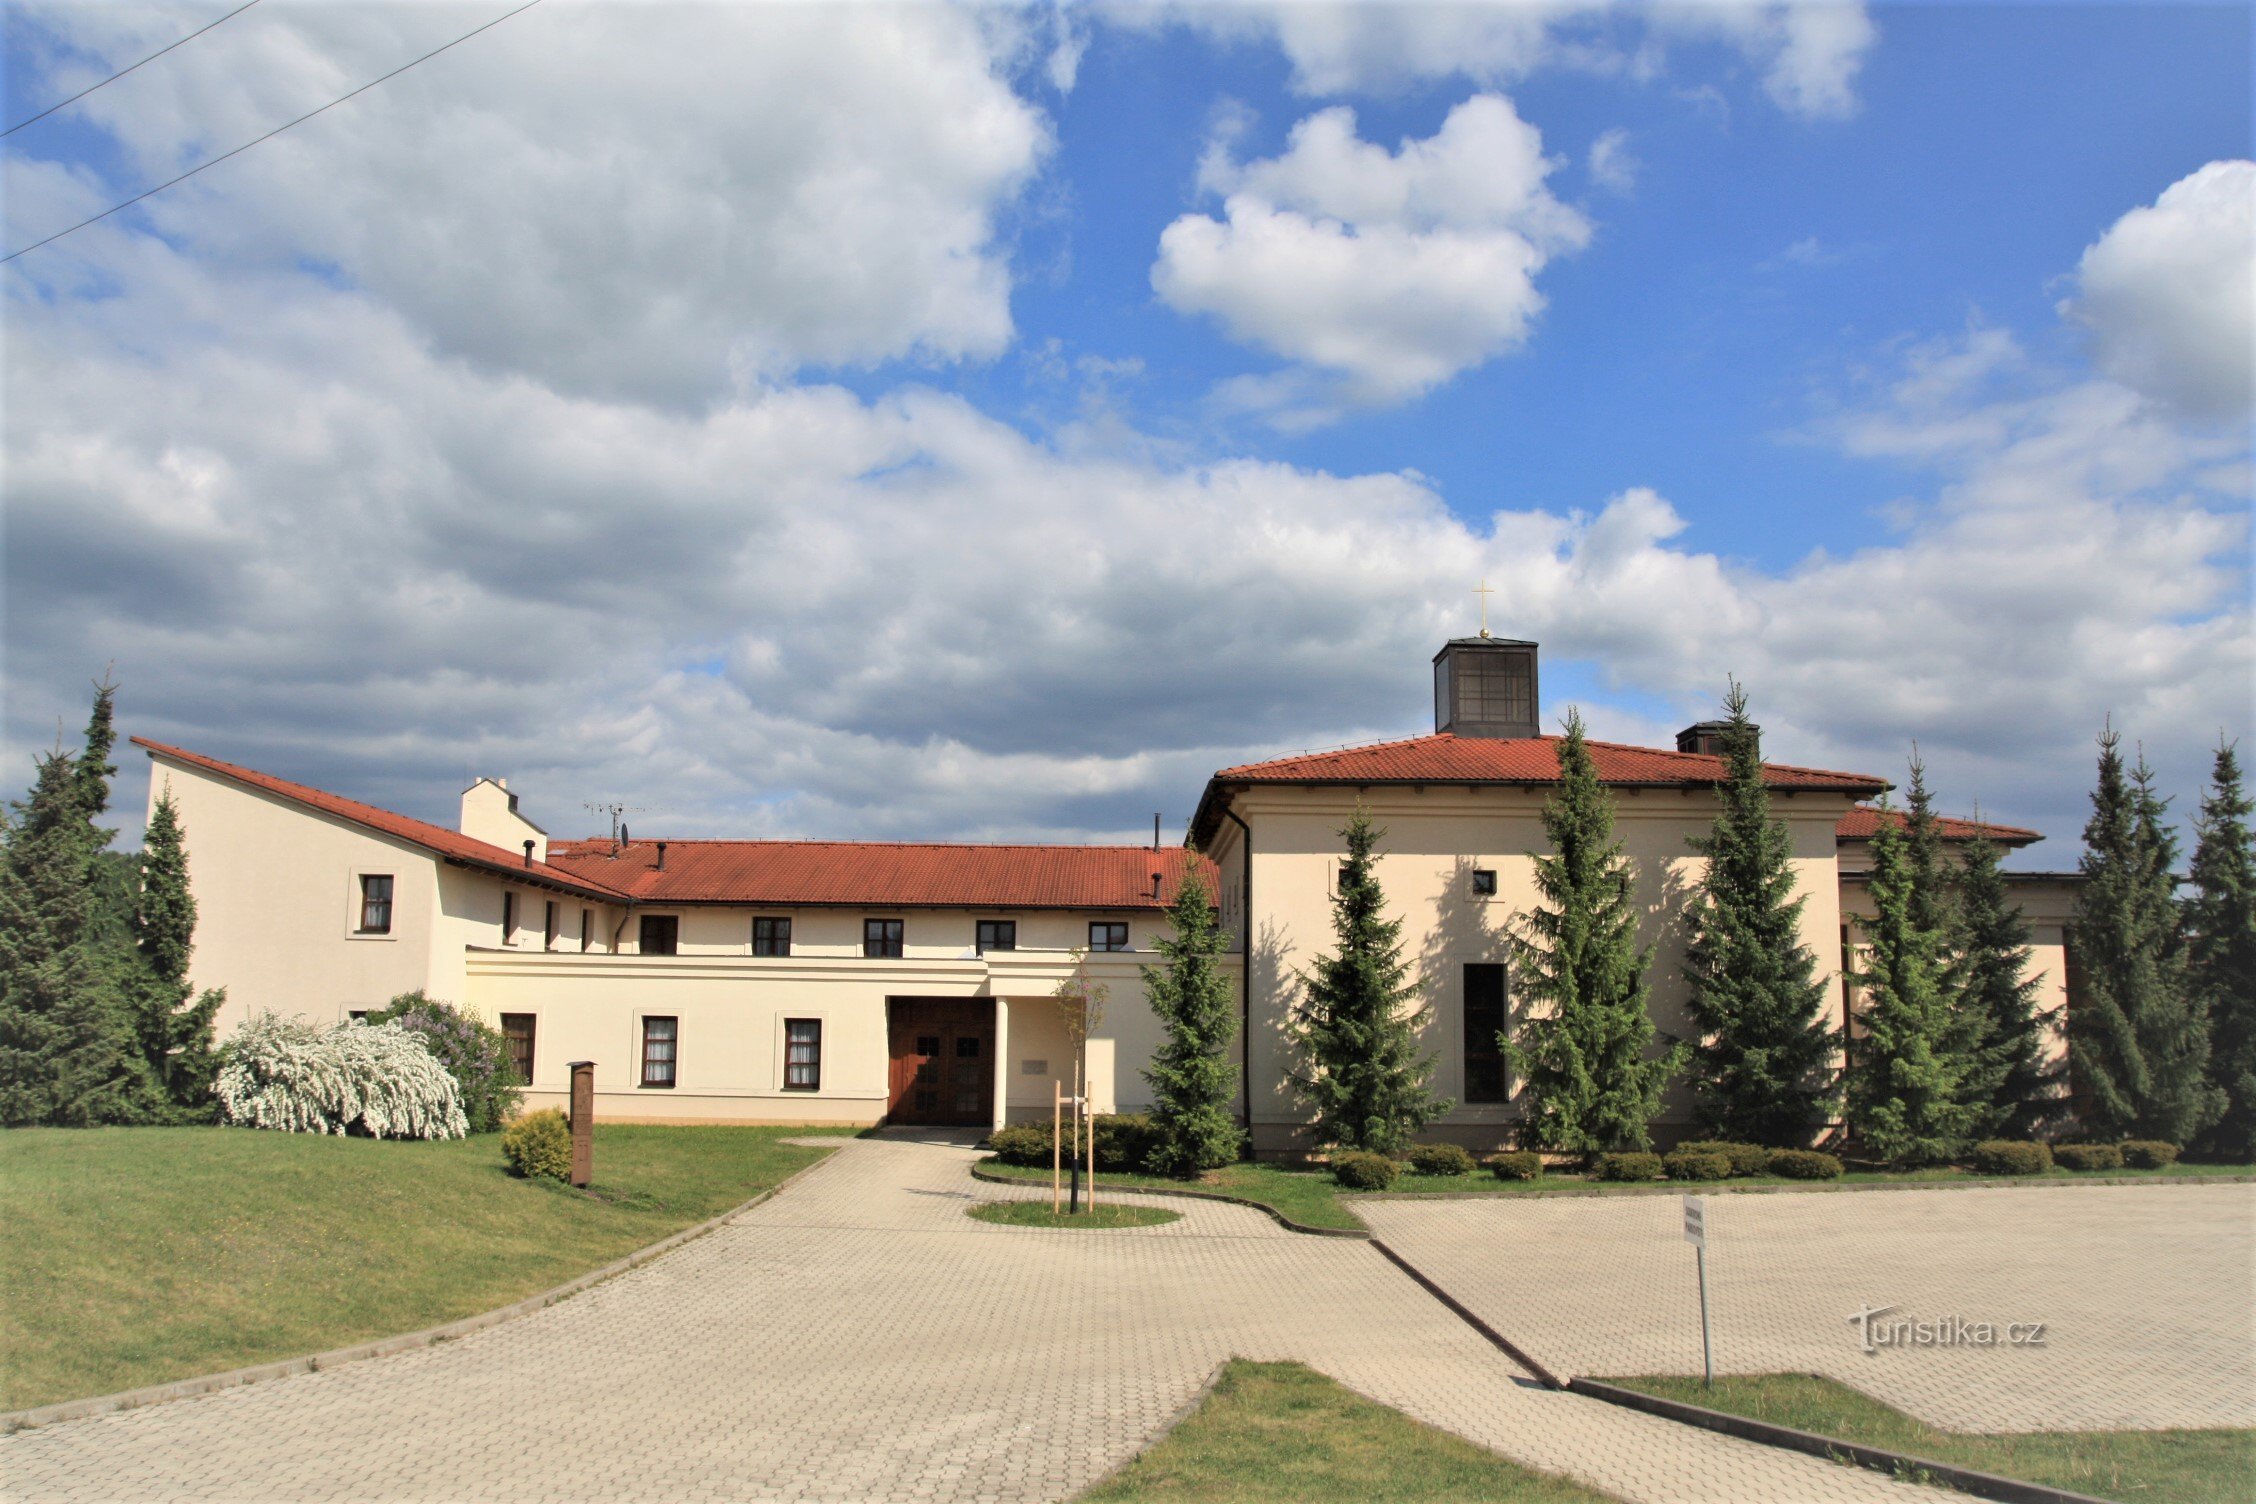 Ruta počinje u Soběšicama u blizini samostana Klarisek